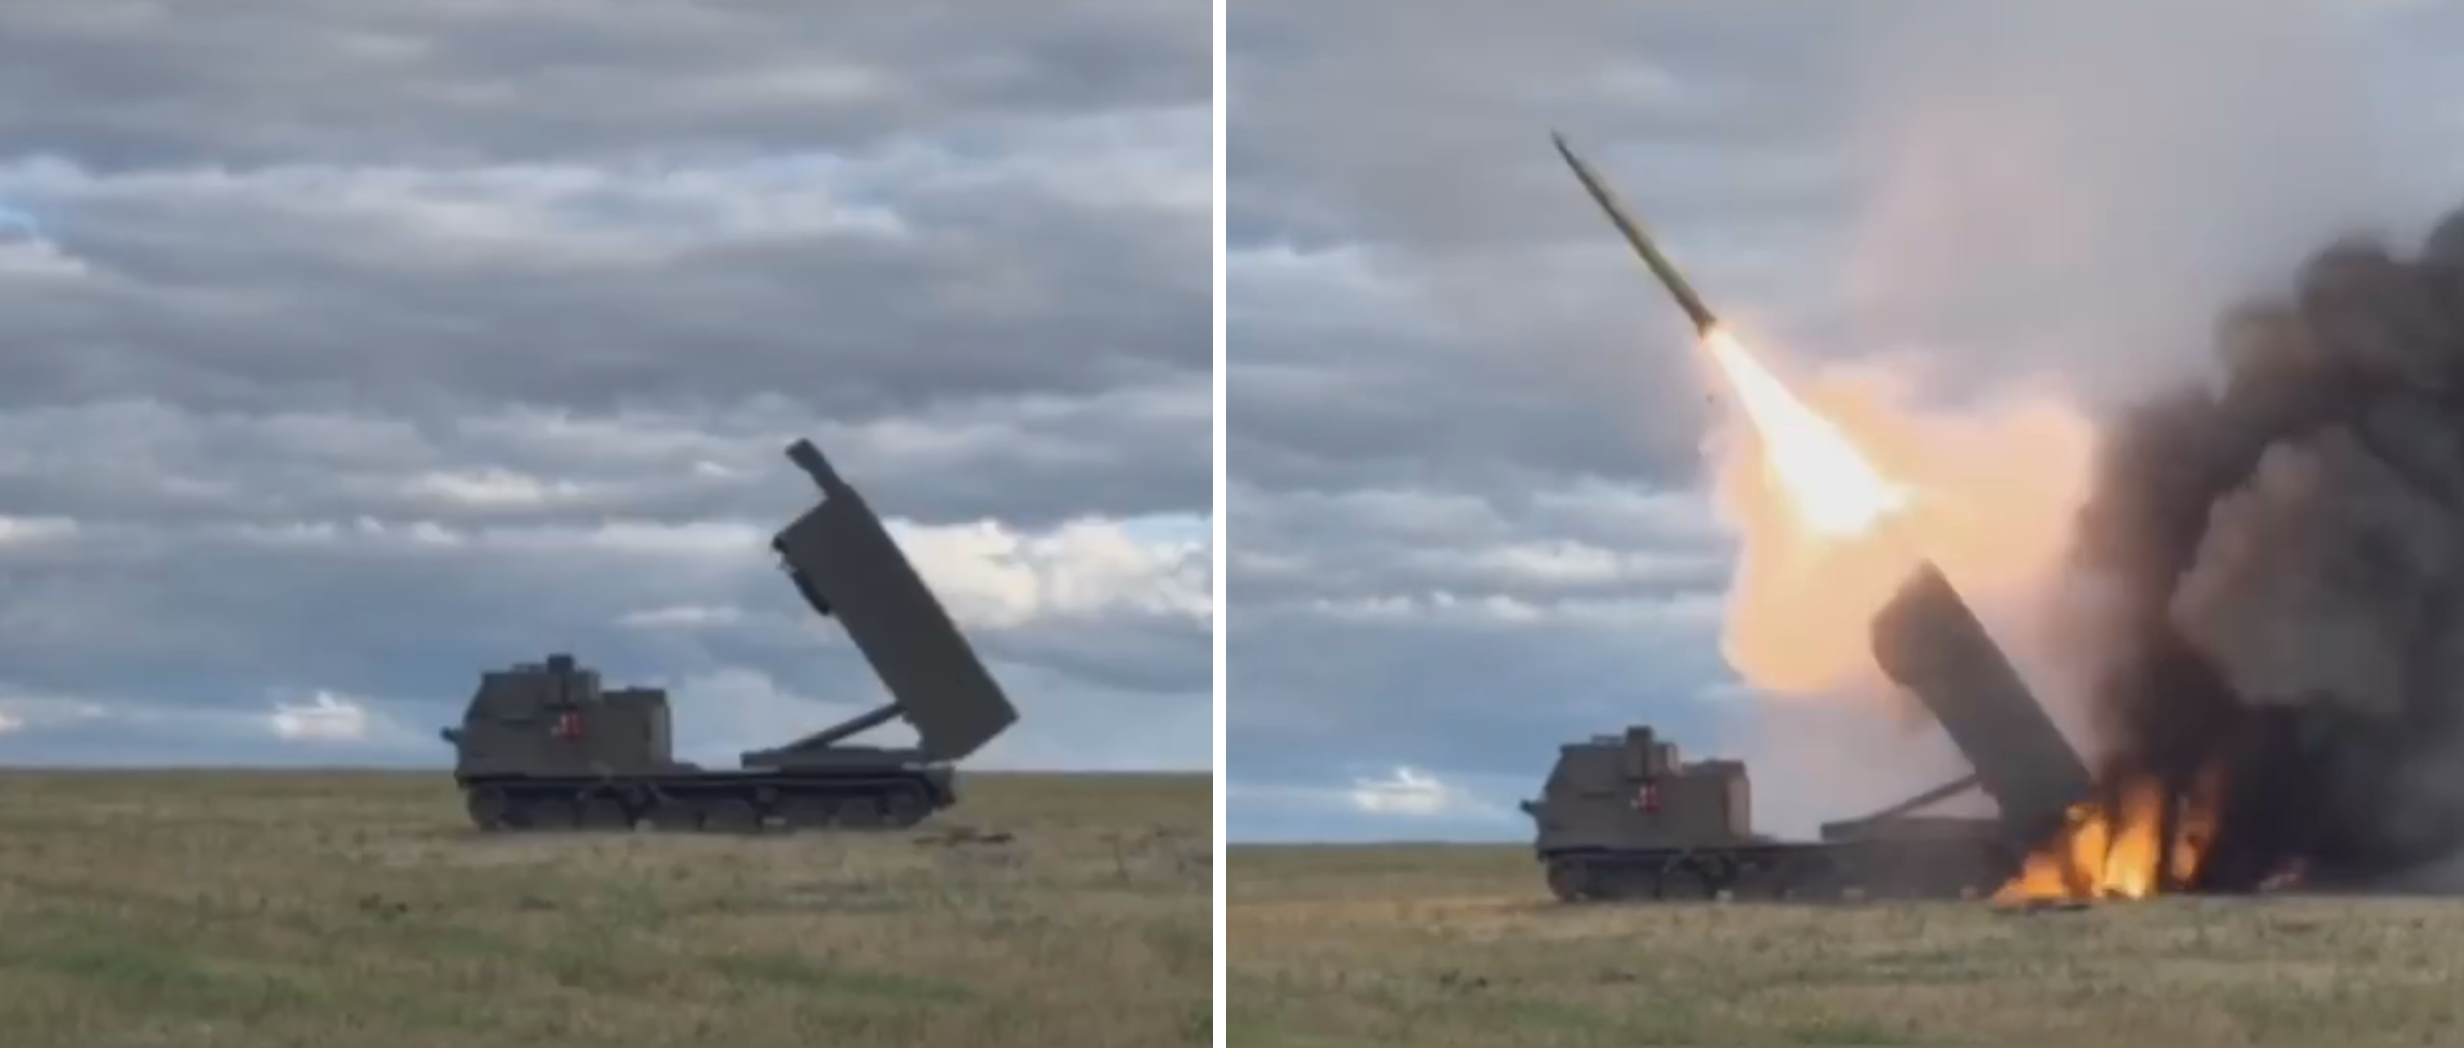 Вооружённые Силы Украины показали редкое видео боевого применения реактивной системы залпового огня M270 MLRS